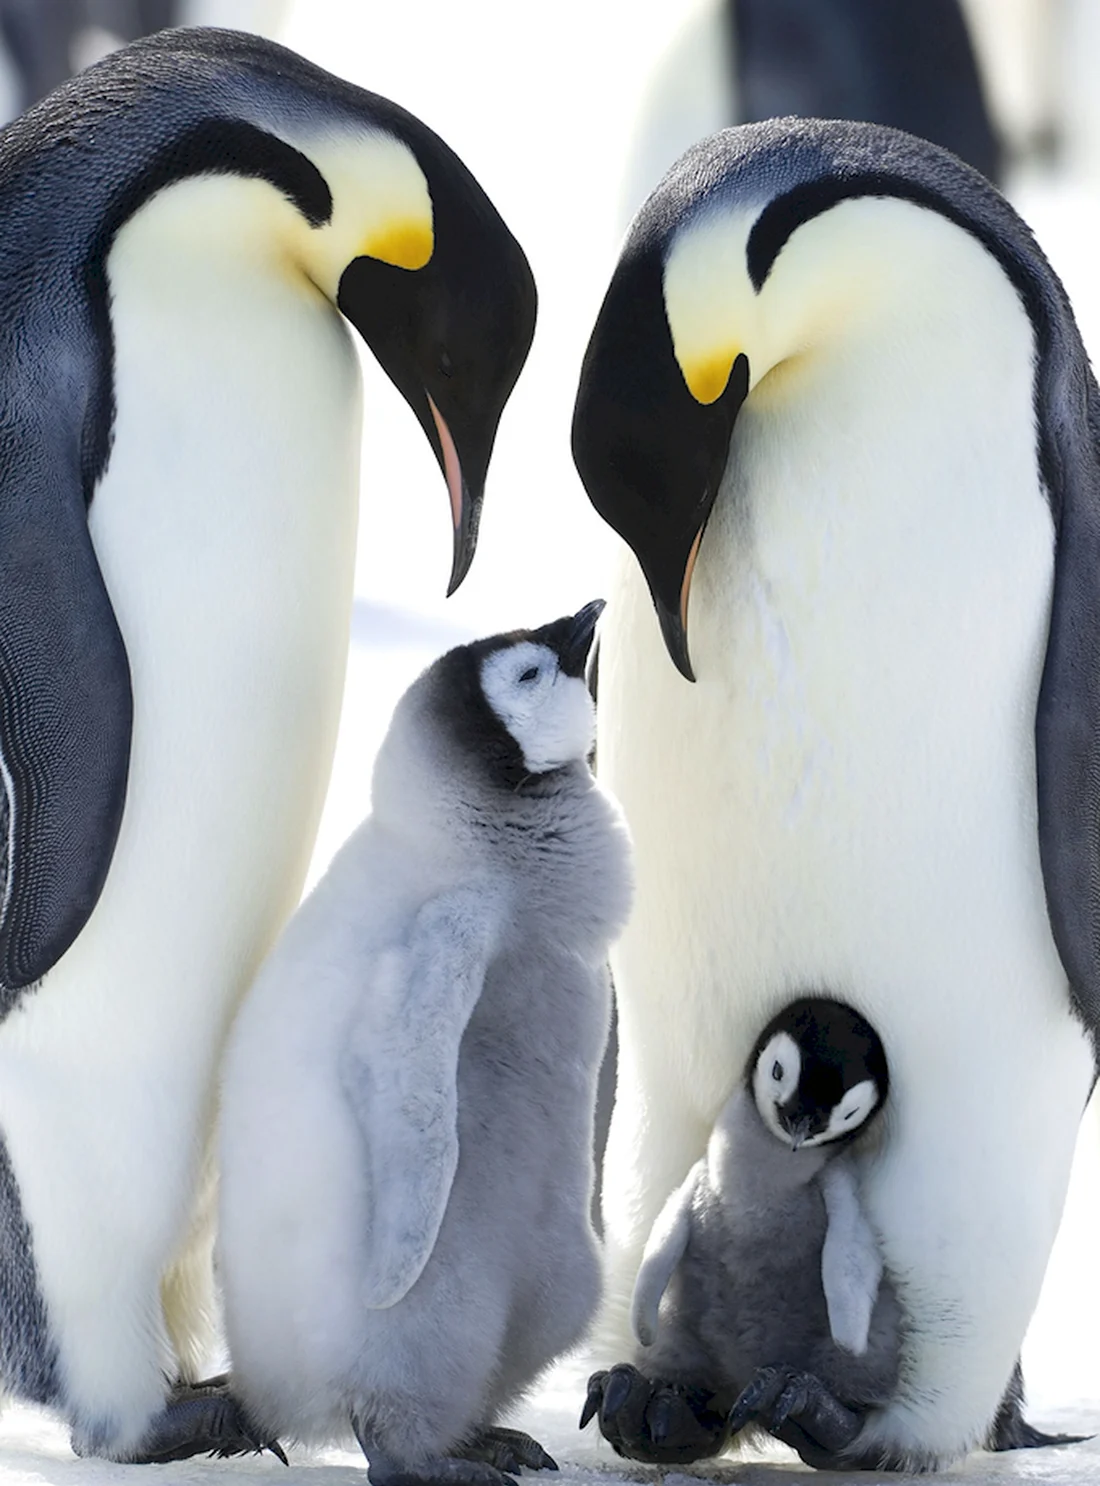 Птенец Императорского пингвина